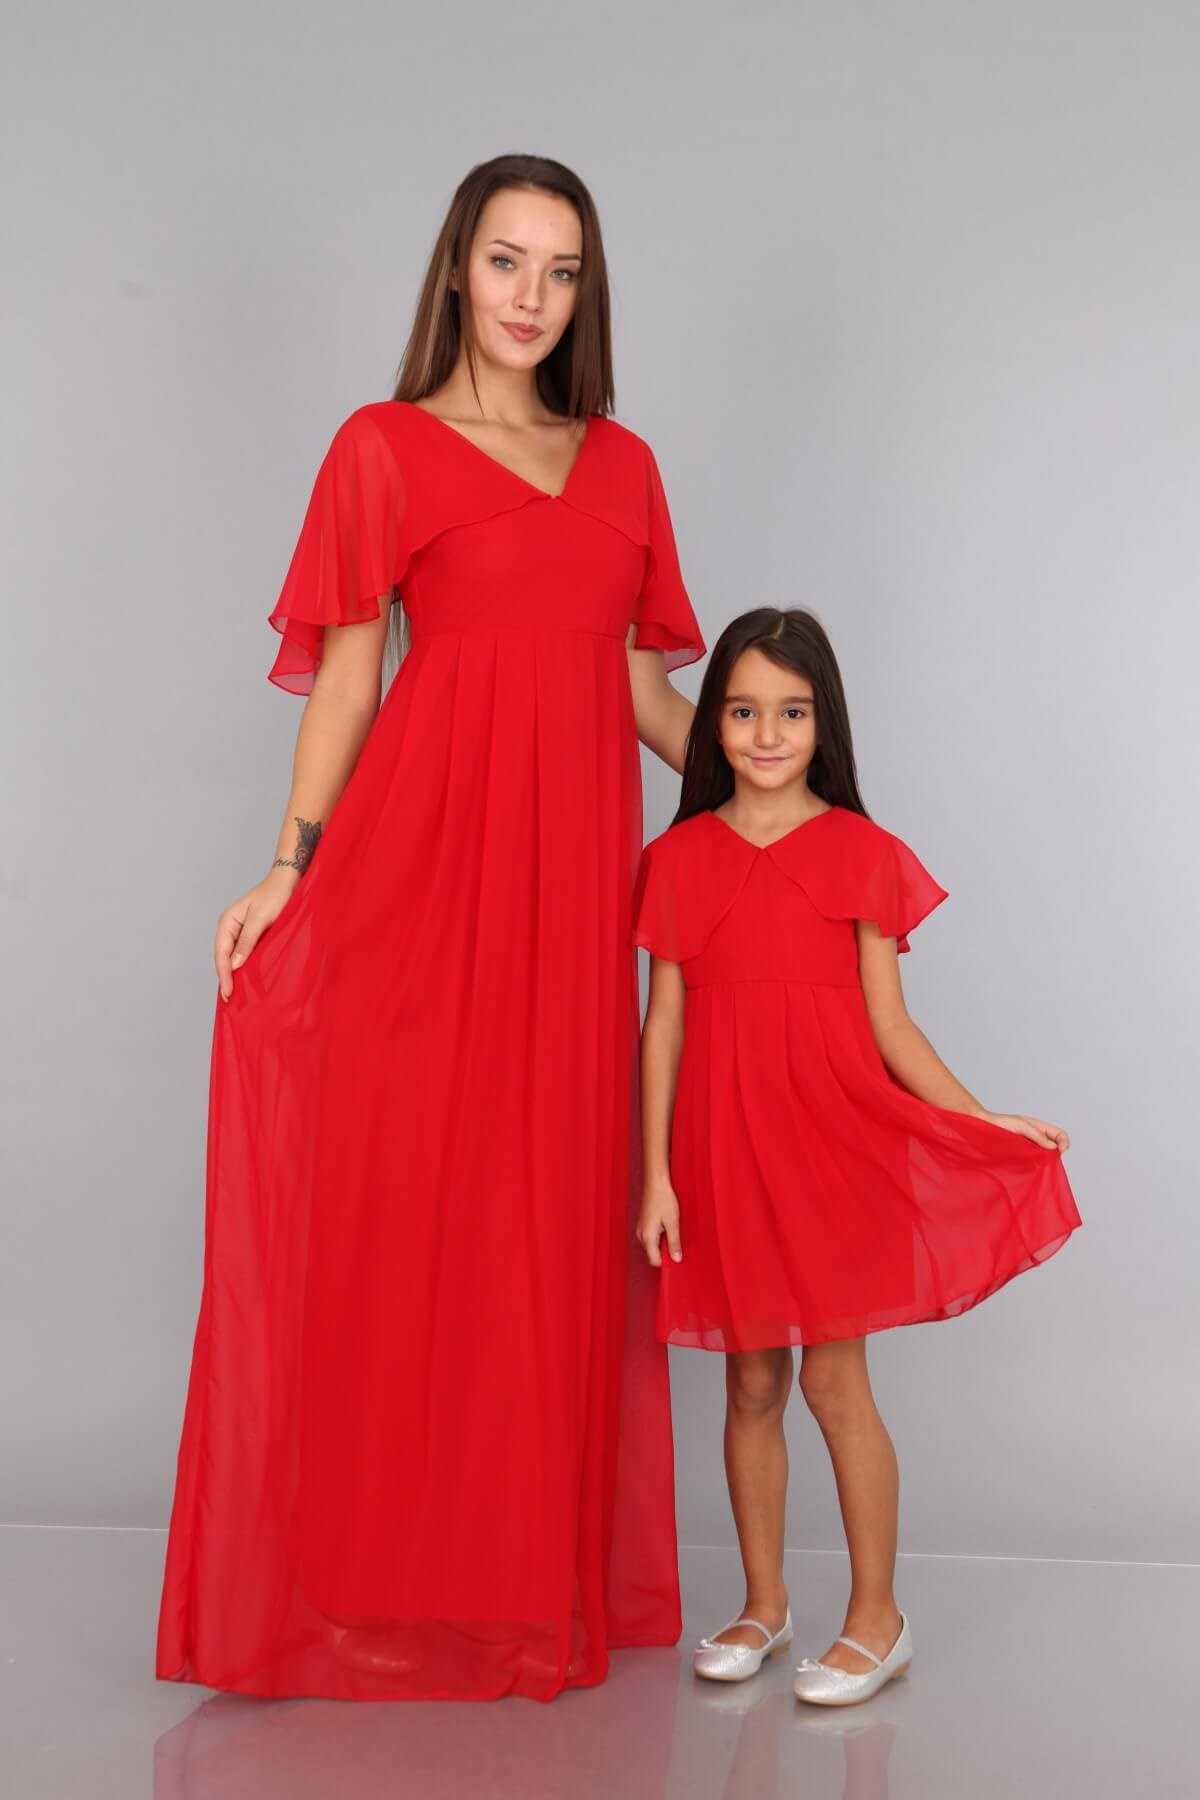 Moda Labio | Melek Kol Anne Kız Kırmızı Elbise